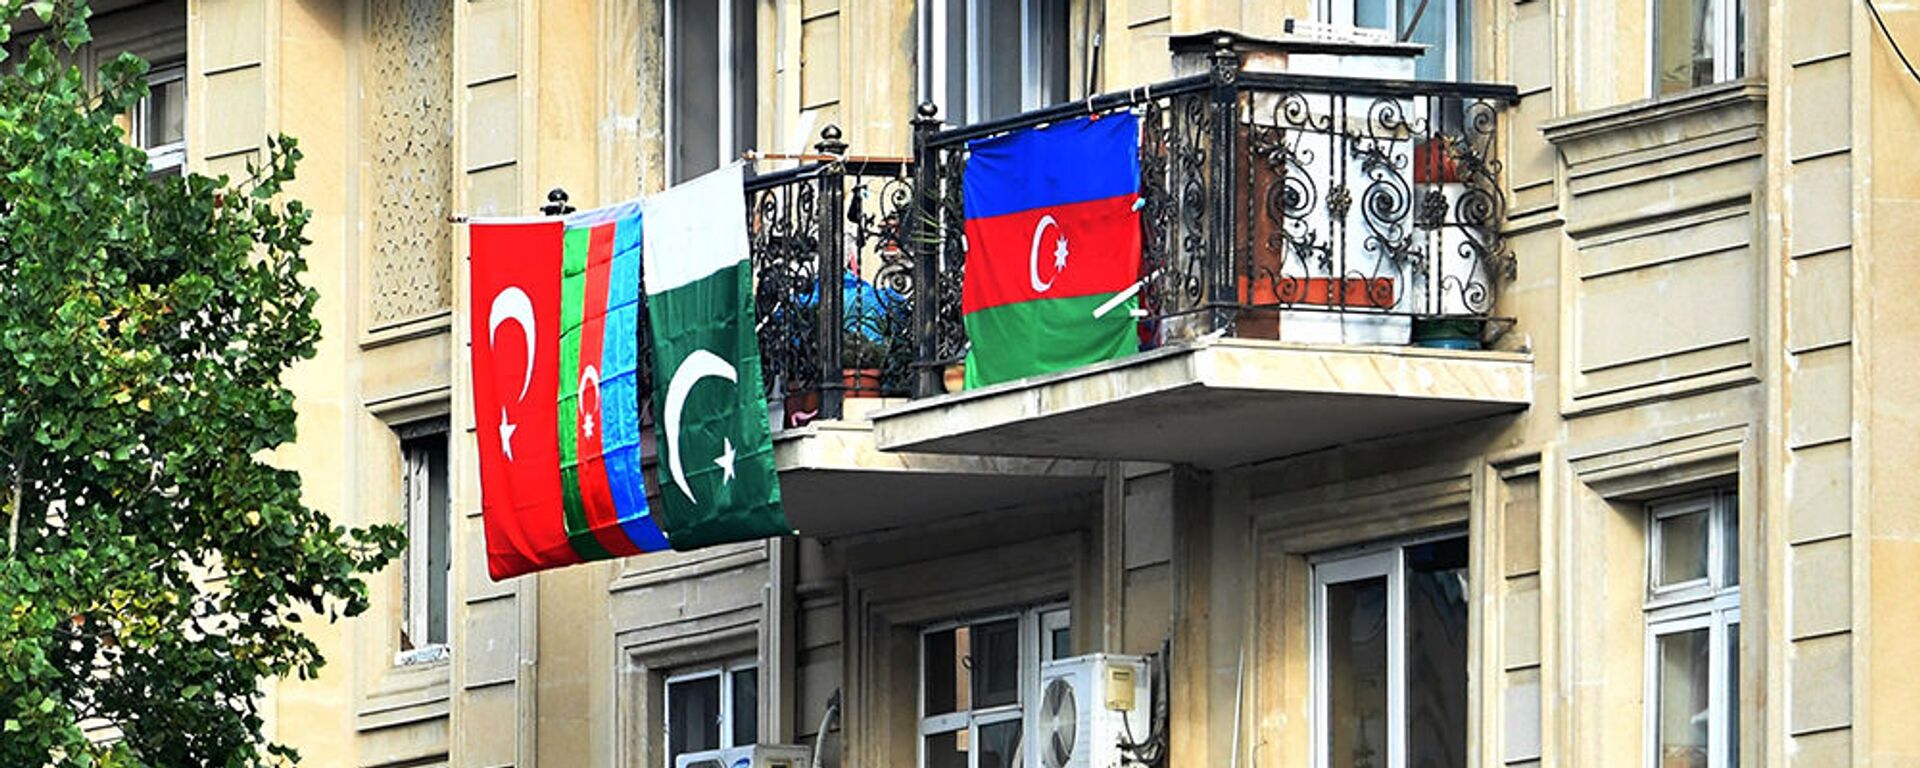 Флаги Азербайджана, Турции и Пакистана, вывешенные на балконе жилого дома в Баку - Sputnik Արմենիա, 1920, 11.09.2021